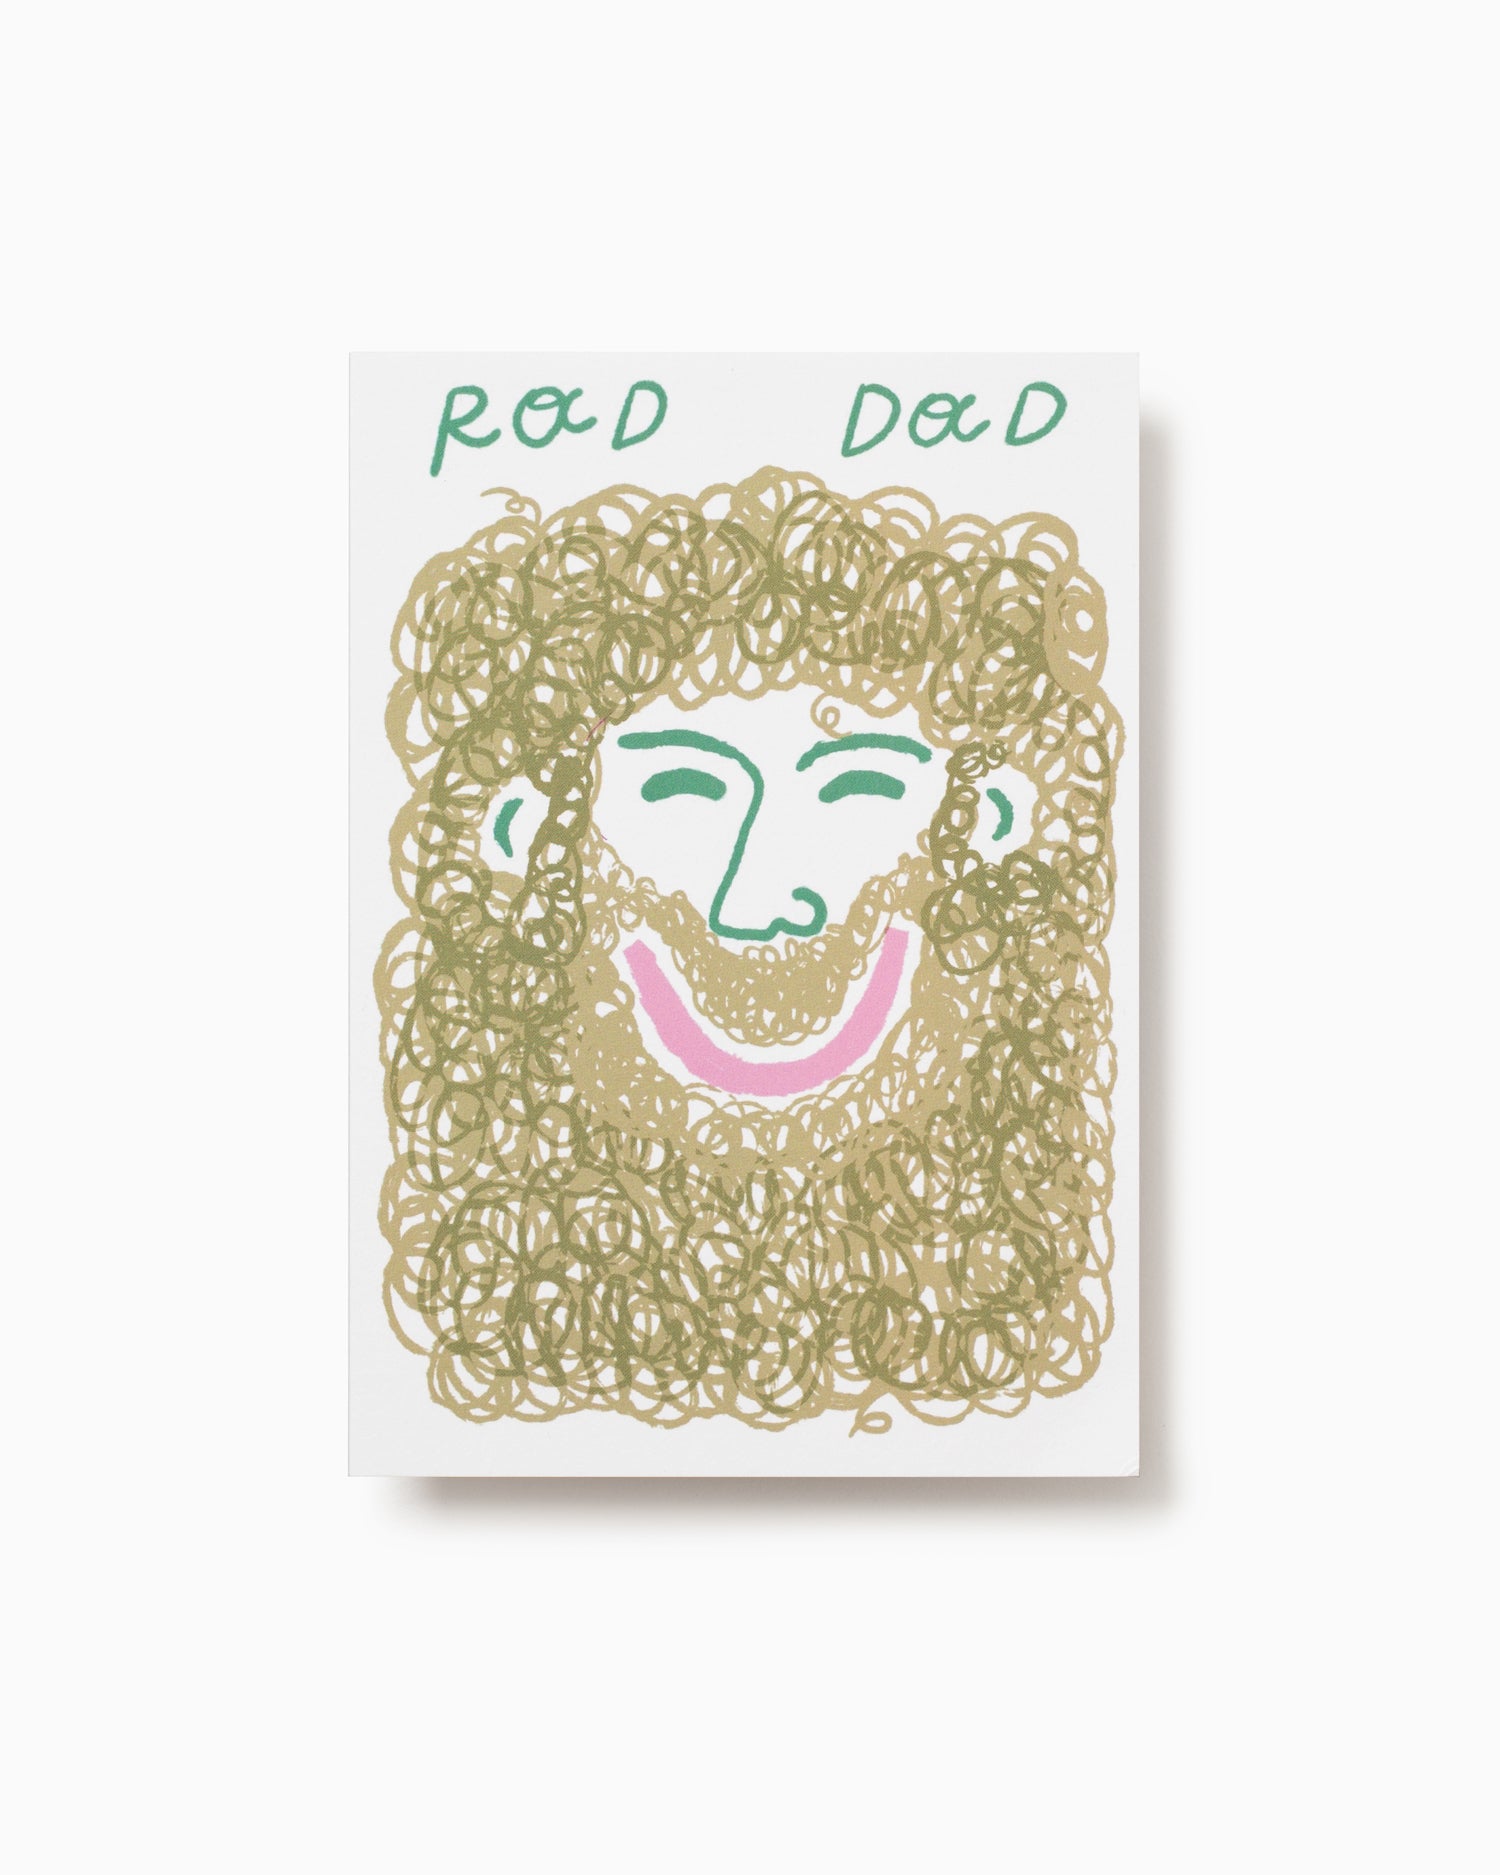 Rad Dad Greeting Card - Rozalina Burkova